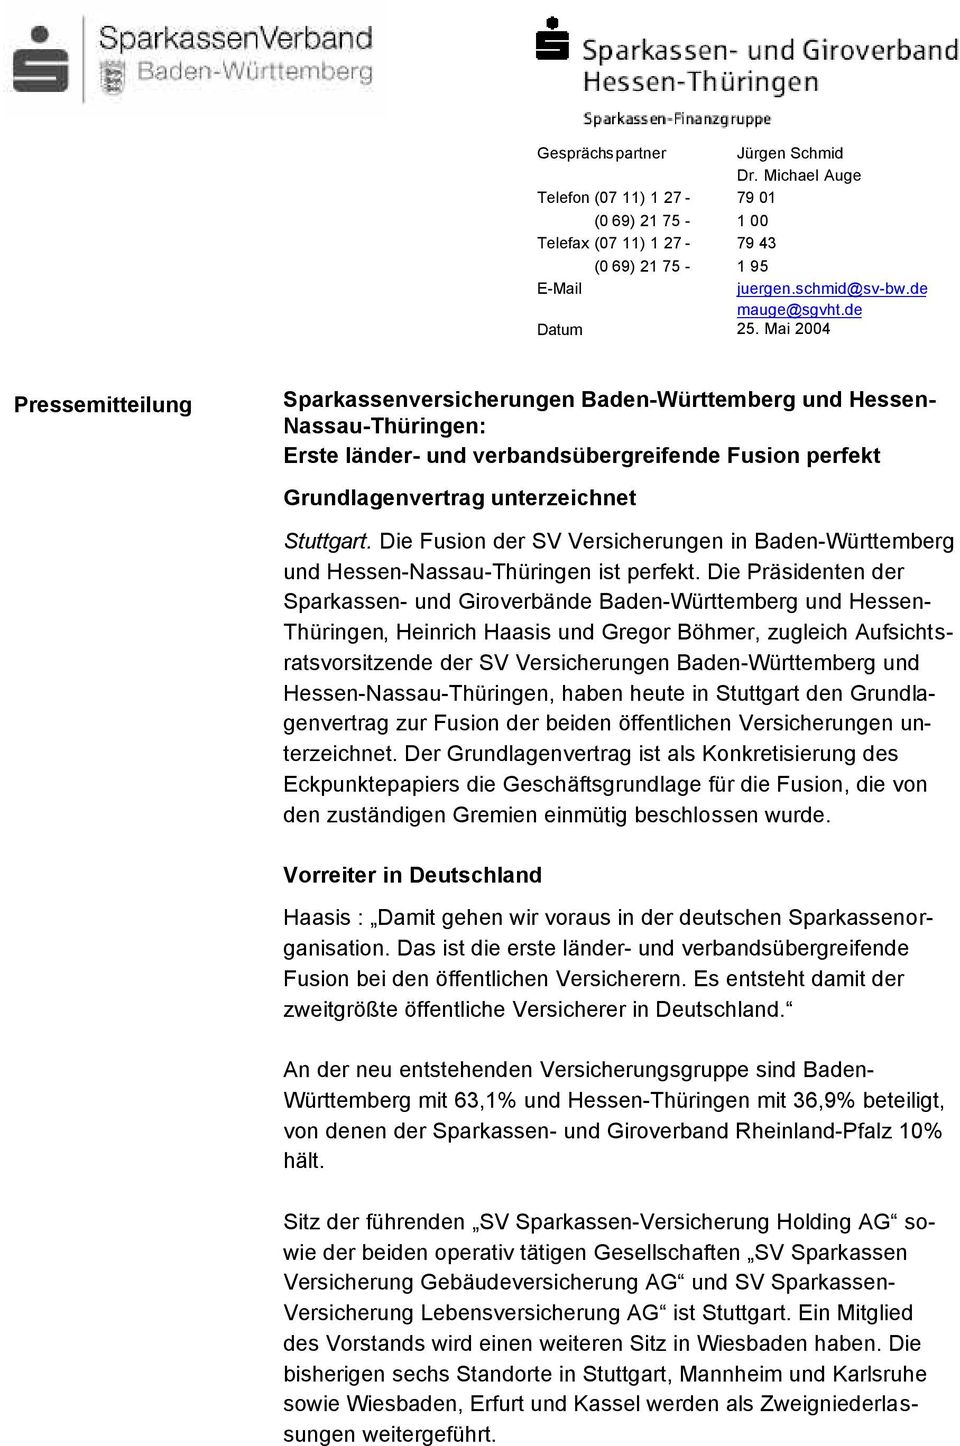 Die Fusion der SV Versicherungen in Baden-Württemberg und Hessen-Nassau-Thüringen ist perfekt.